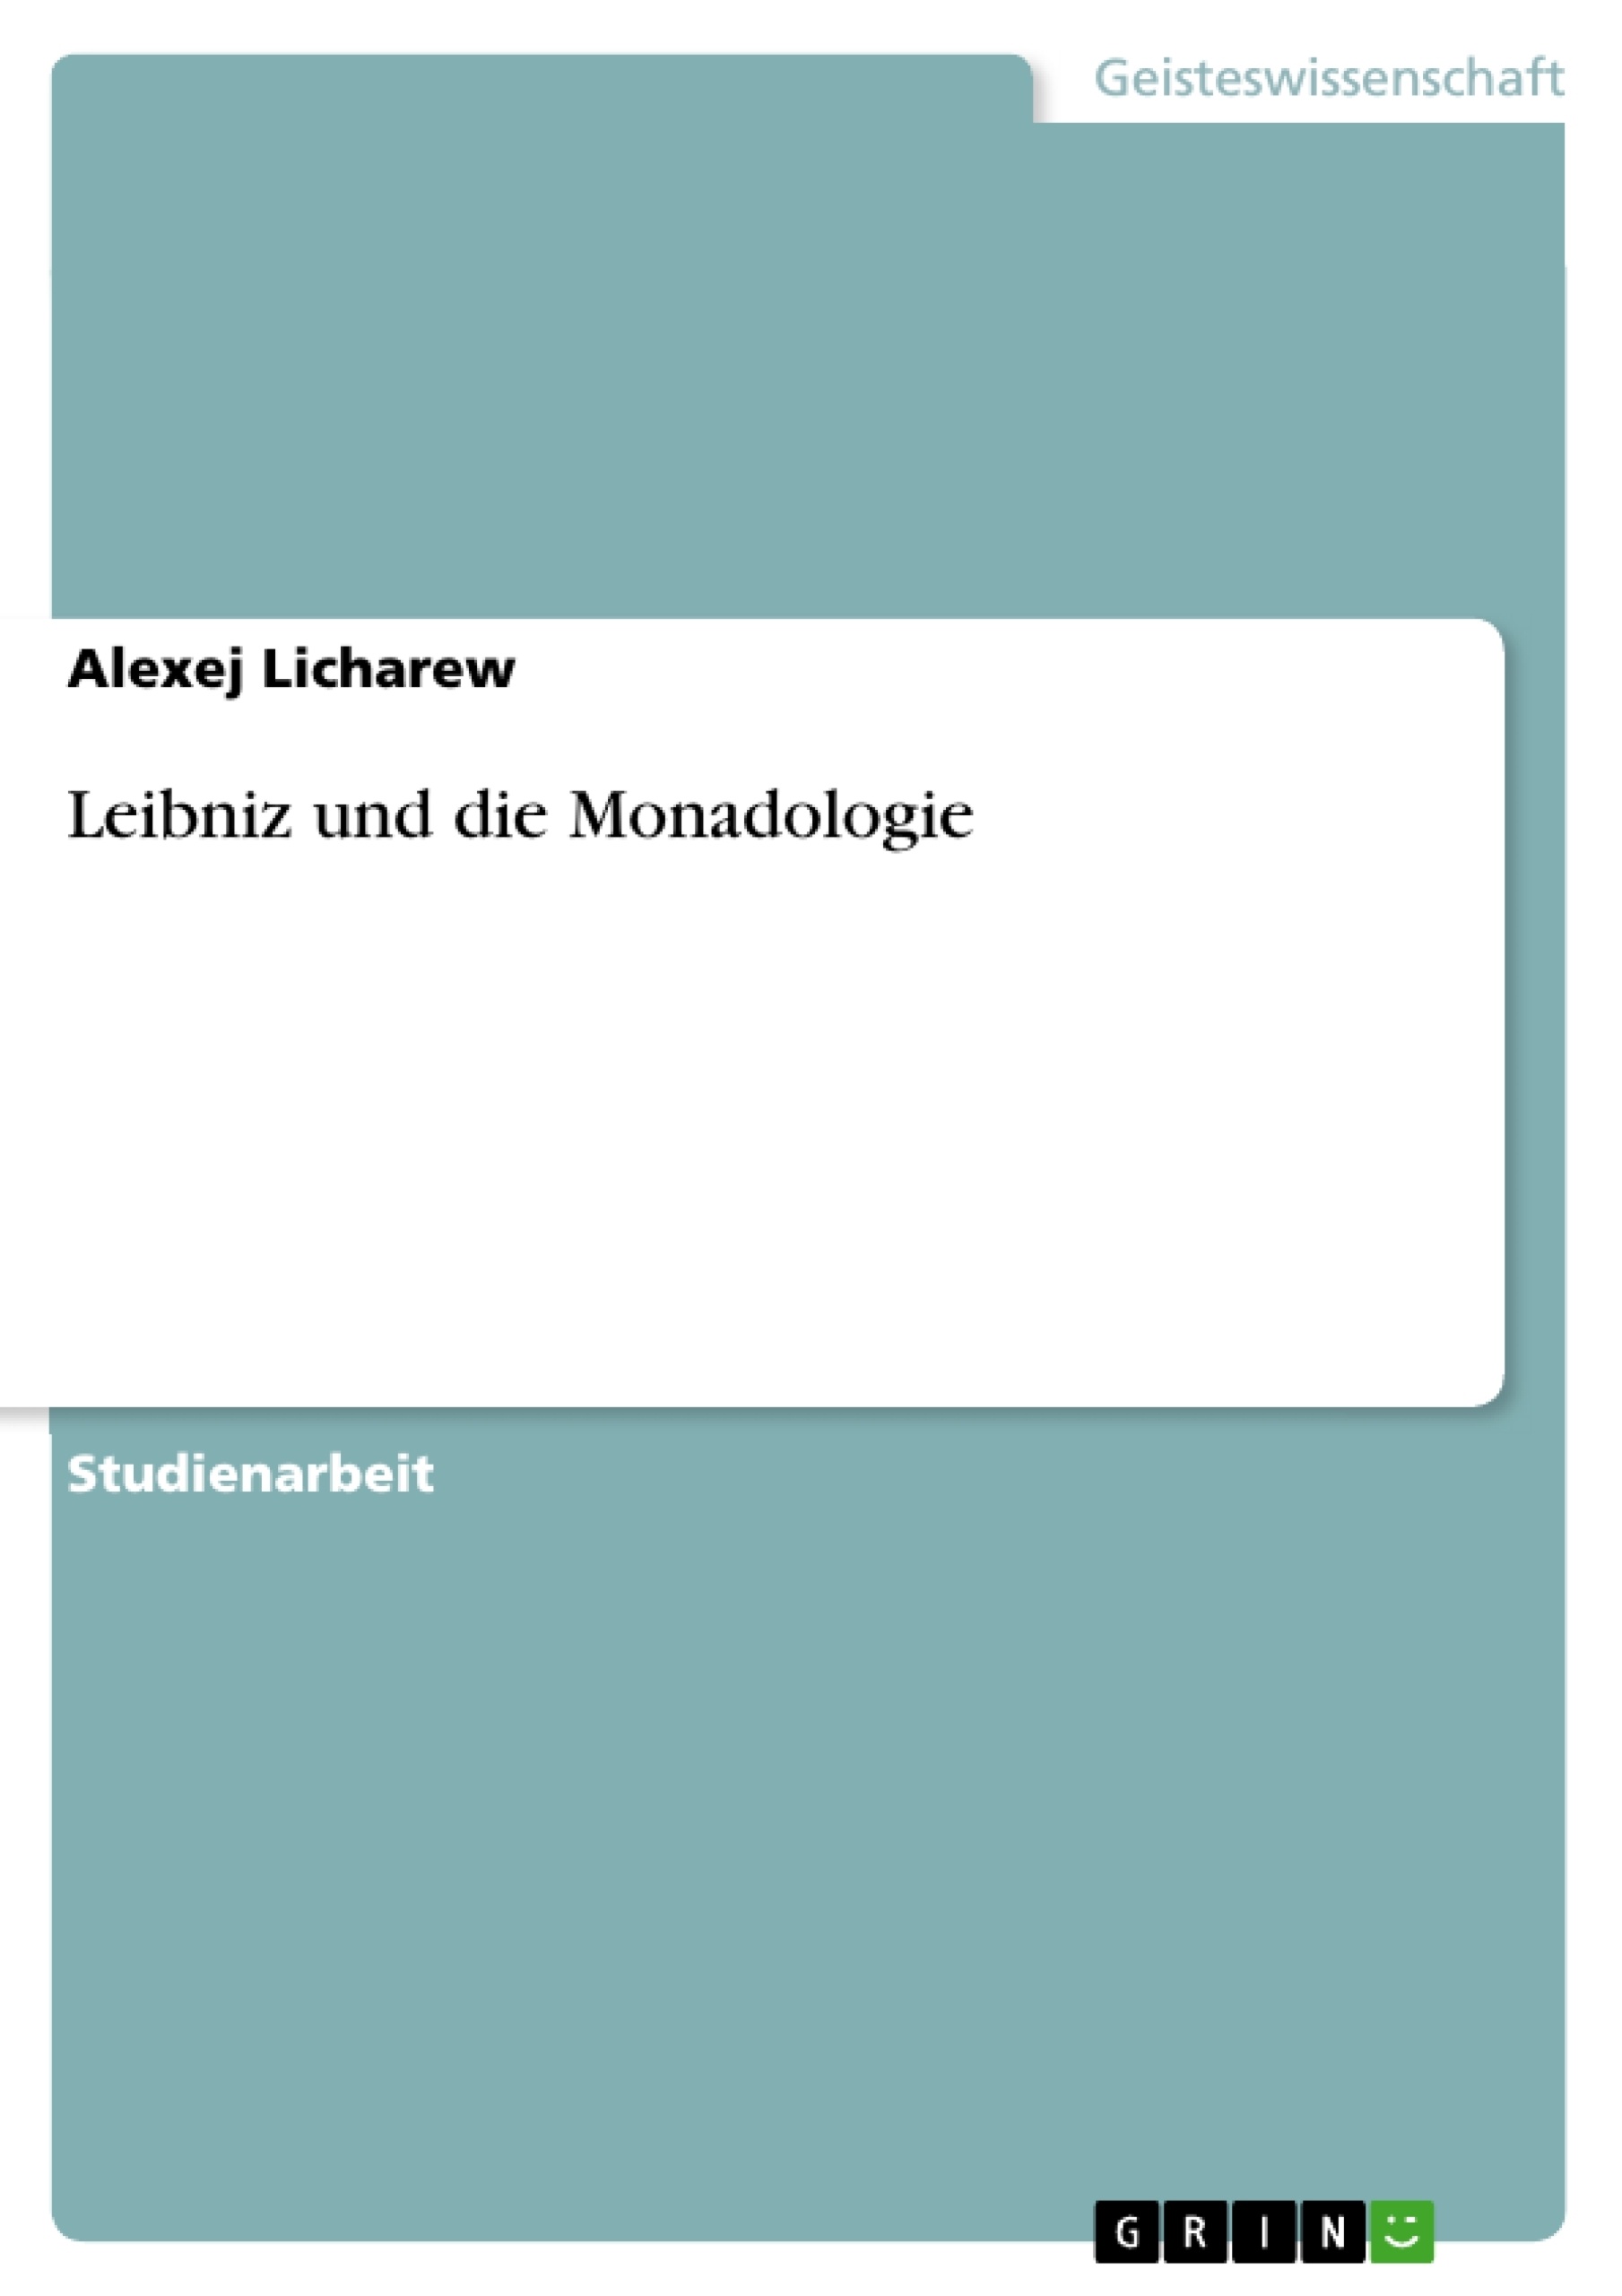 Título: Leibniz und die Monadologie